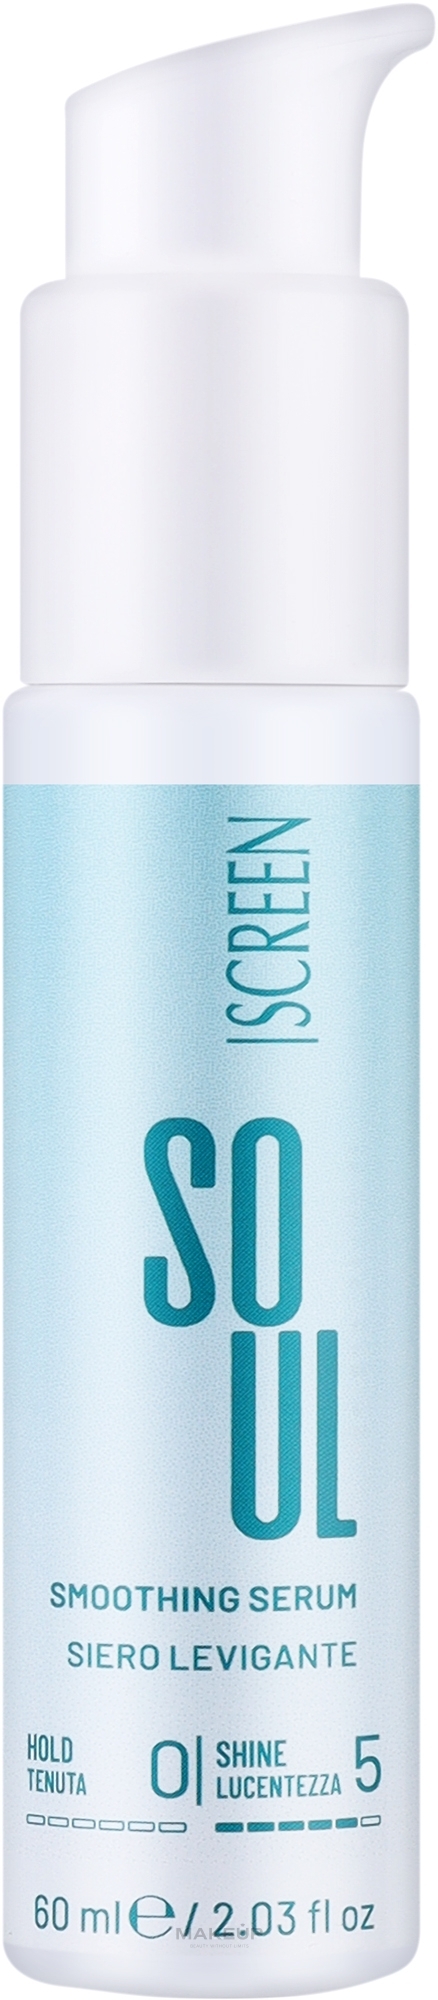 Разглаживающая сыворотка для волос - Screen Soul Smoothing Serum — фото 60ml